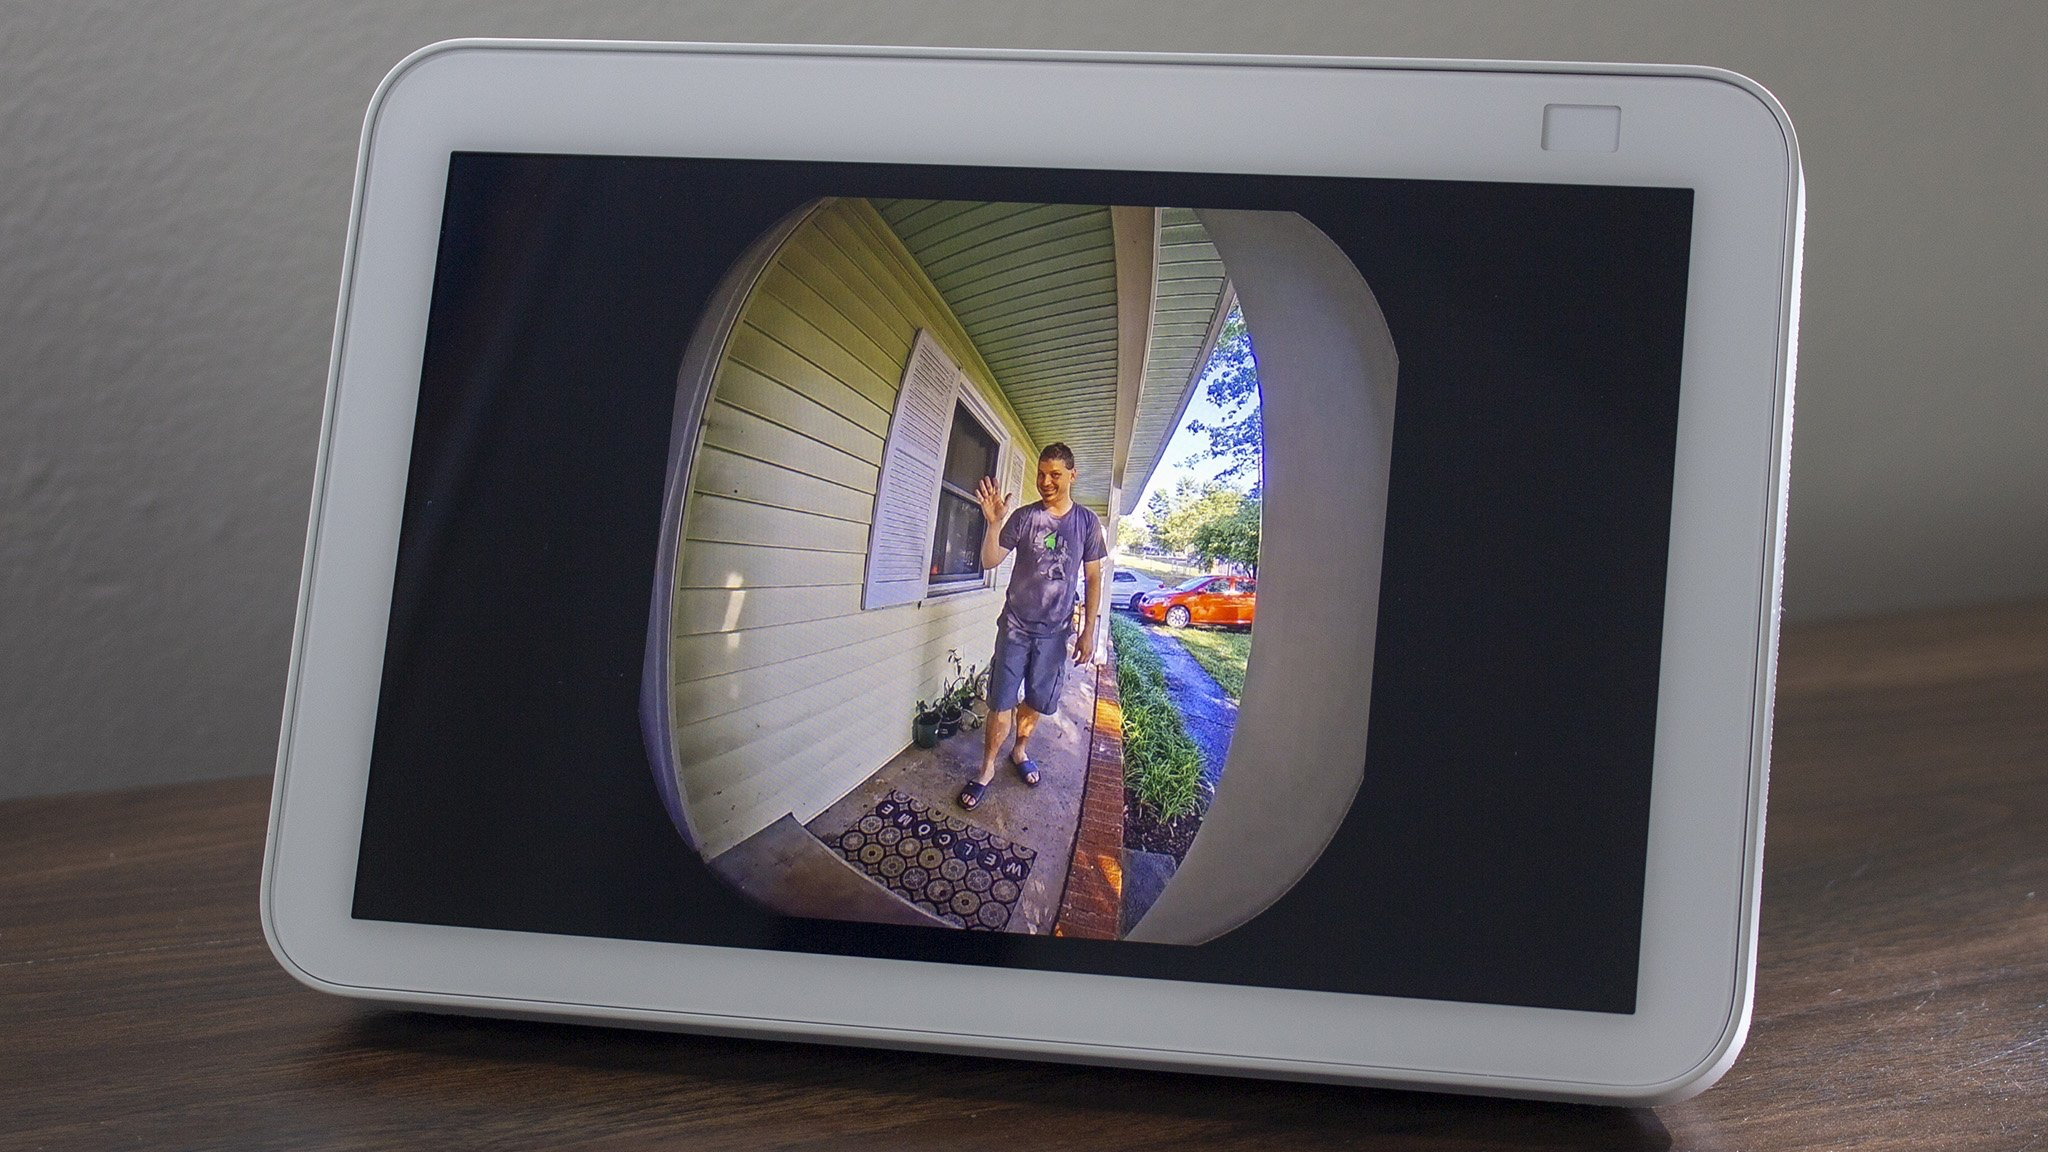 Video doorbell with Amazon Echo Show 5